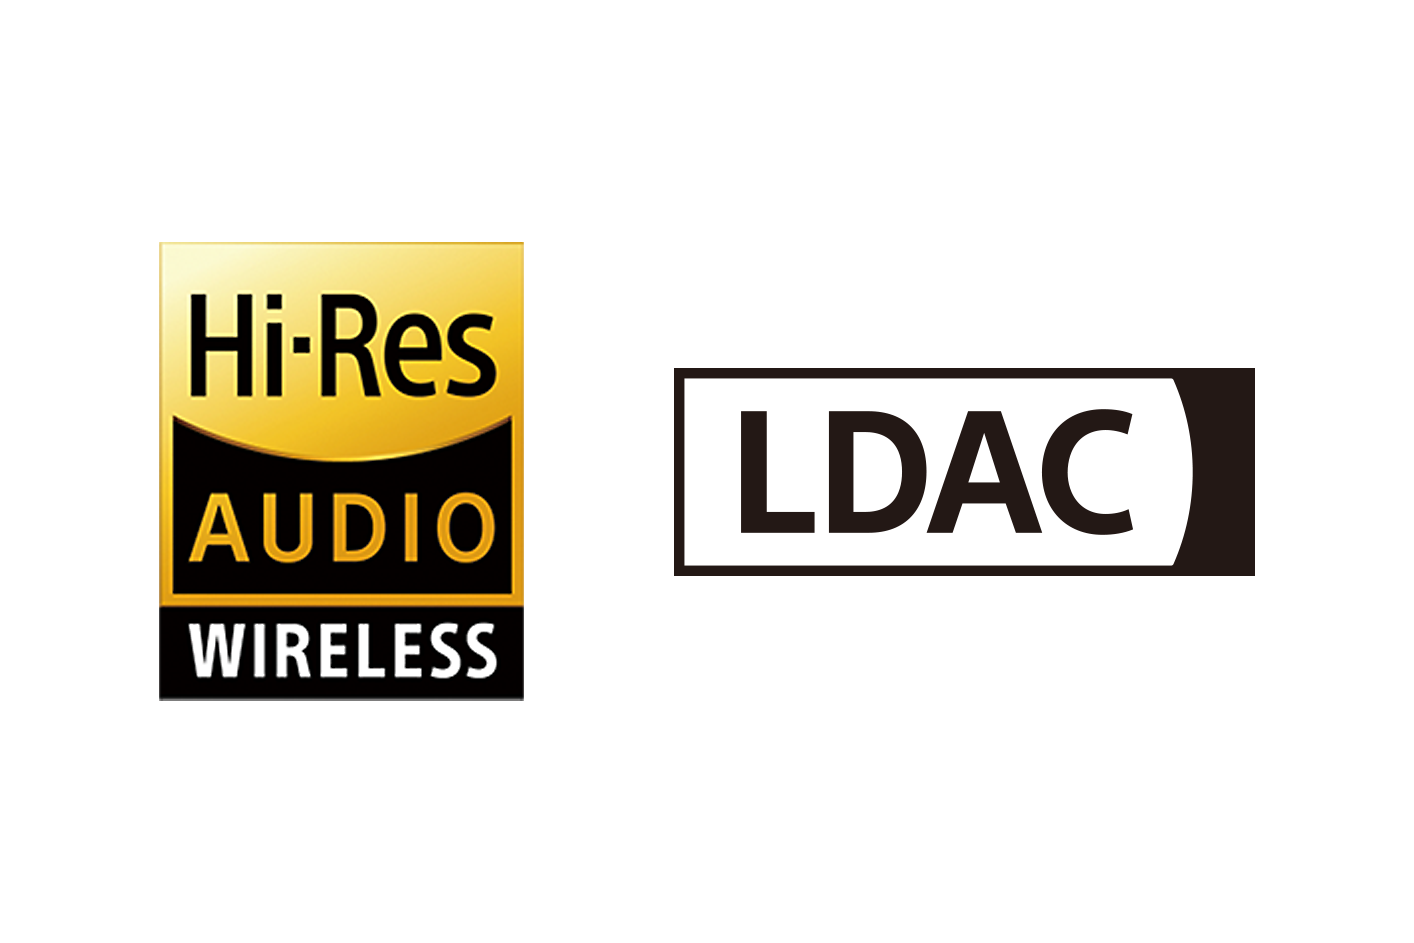 Une image des logos Hi-Res Audio sans fil et LDAC.